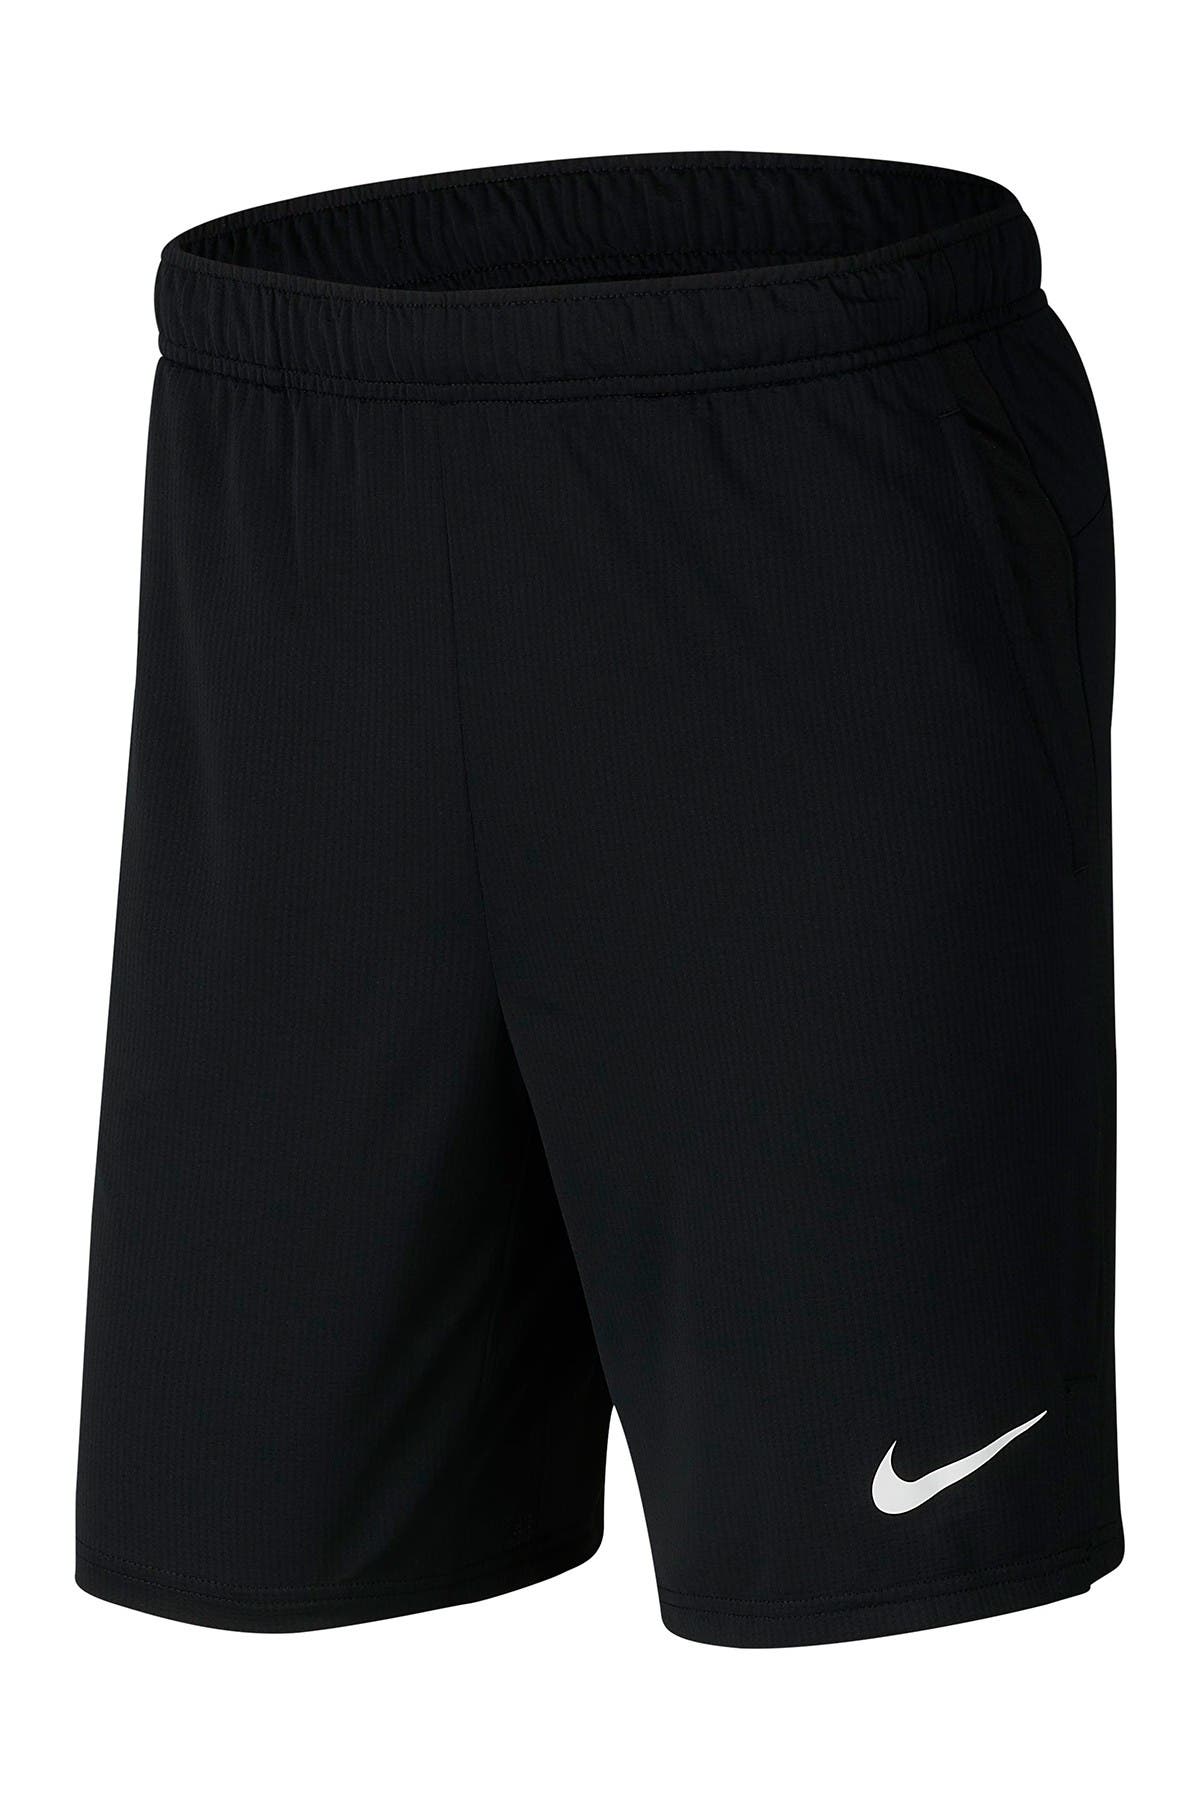 Nike Clothing for Men | Nordstrom Rack